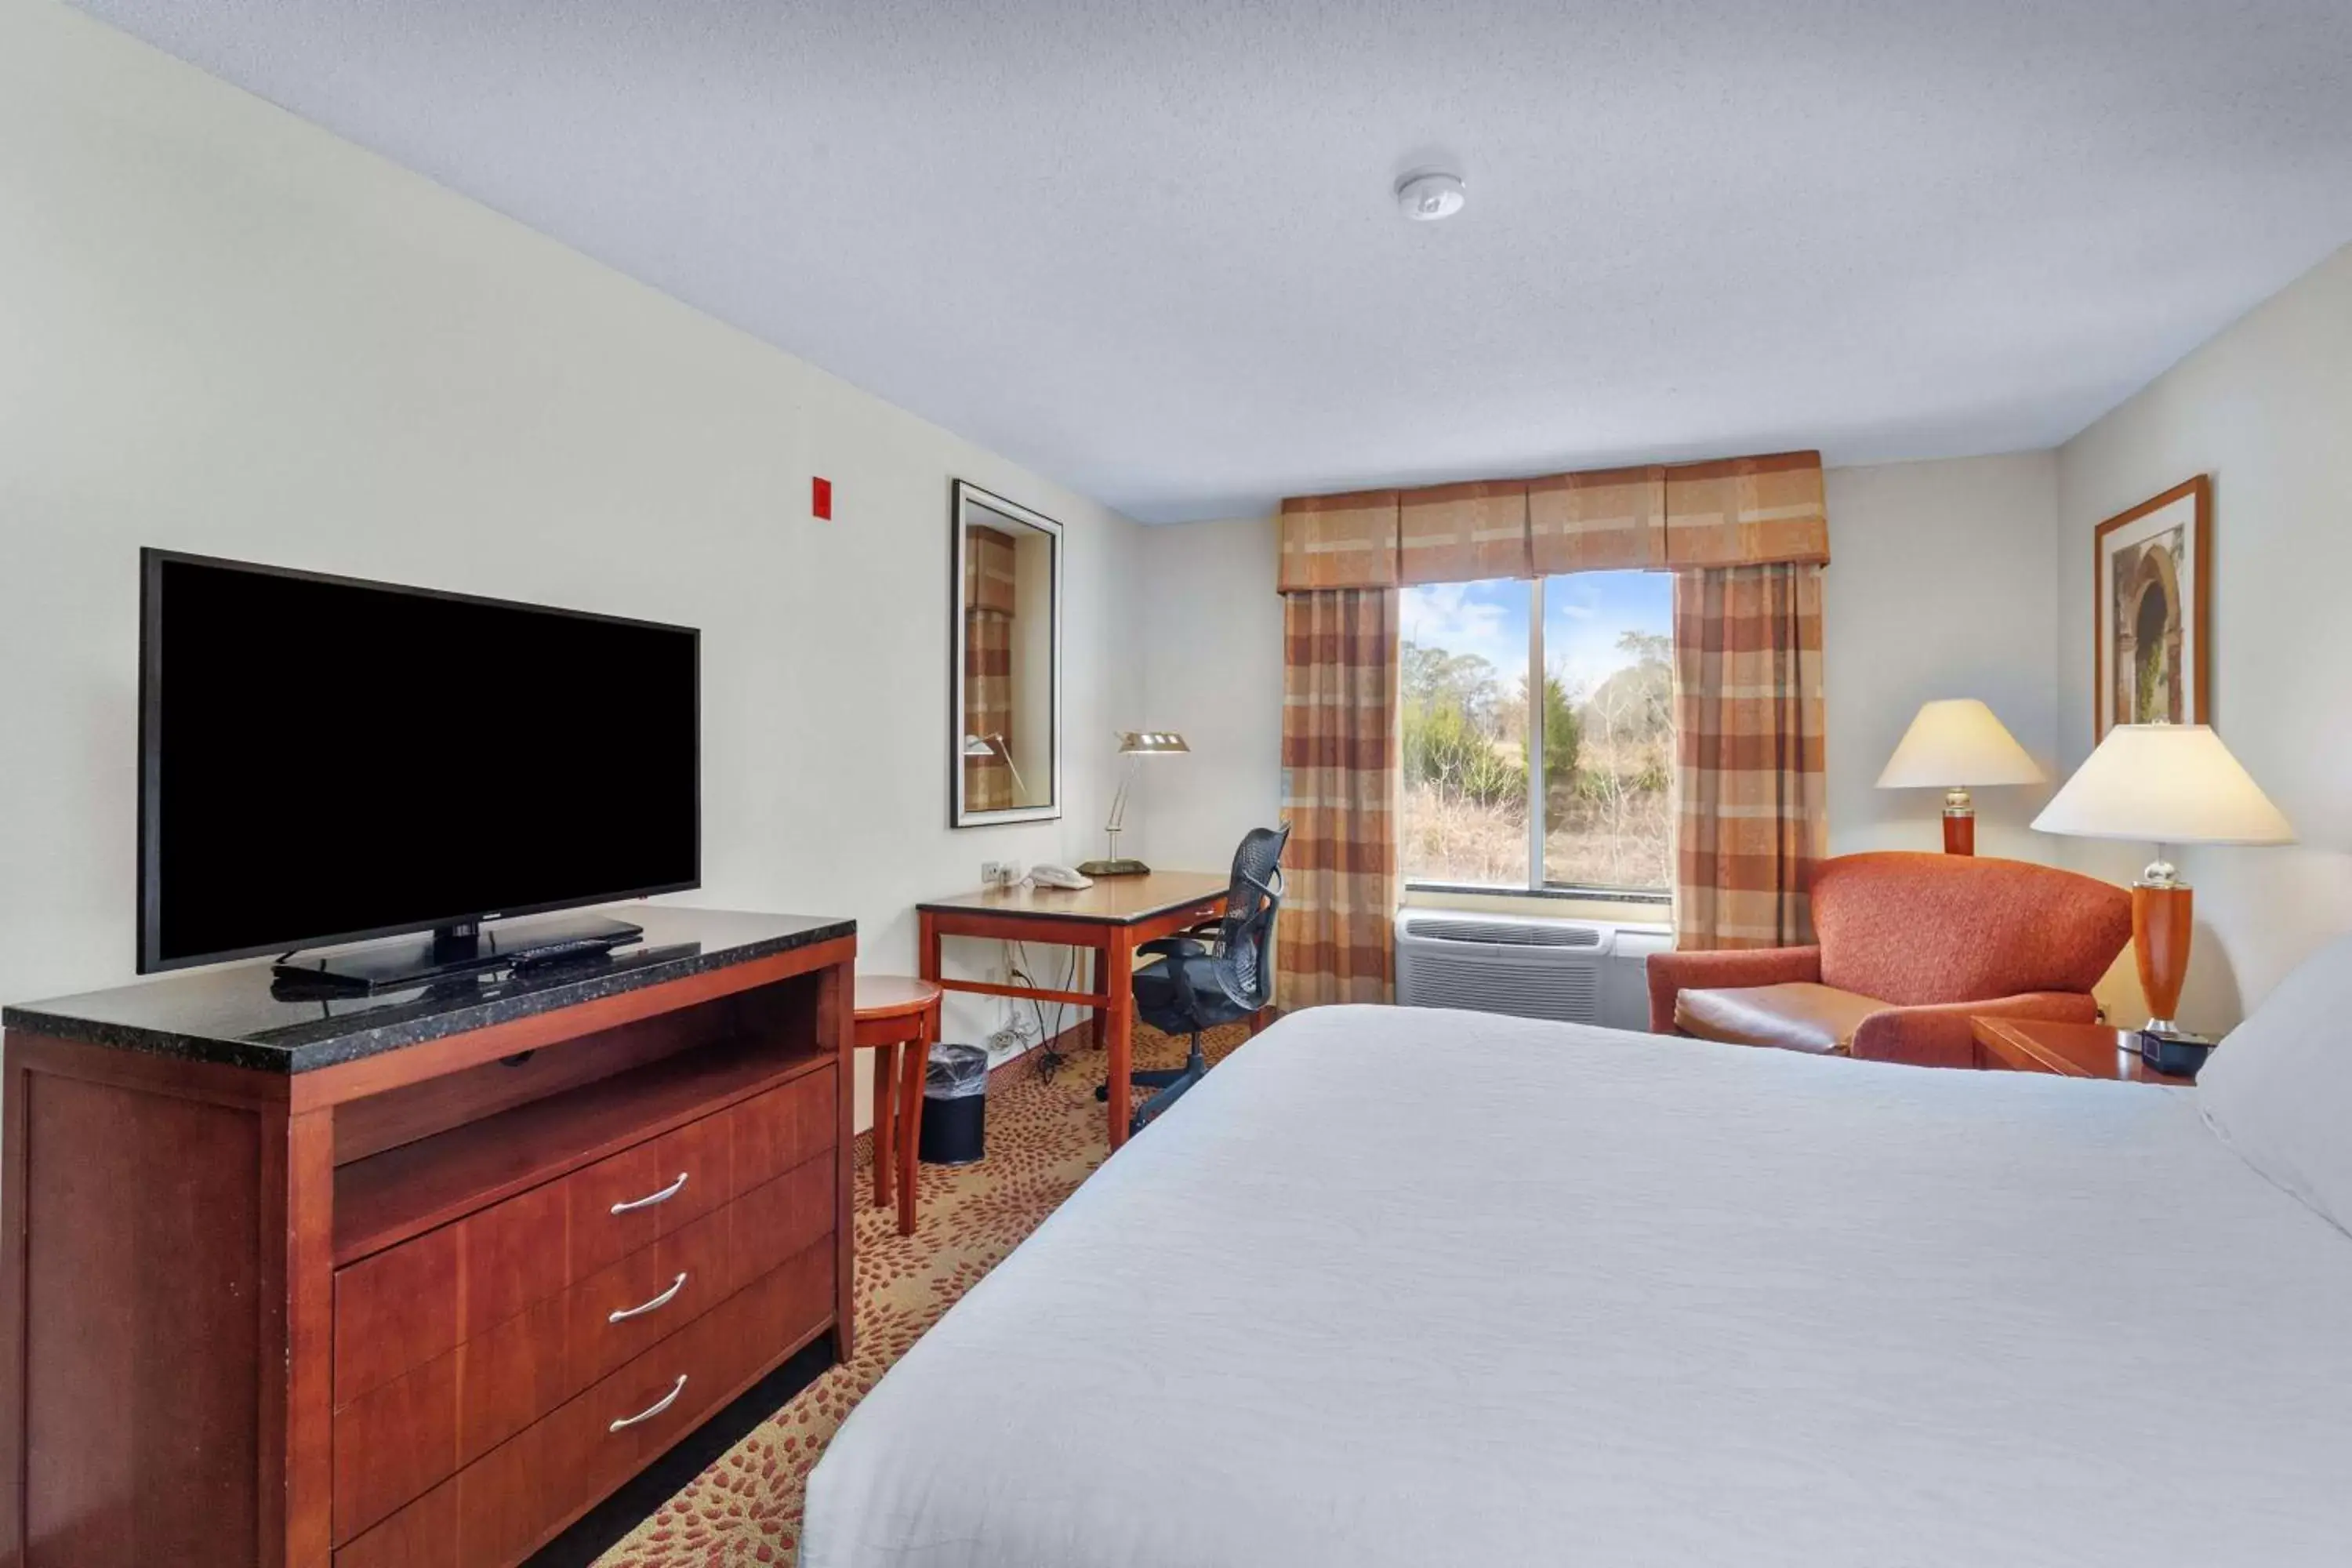 Bedroom, TV/Entertainment Center in Hilton Garden Inn Starkville